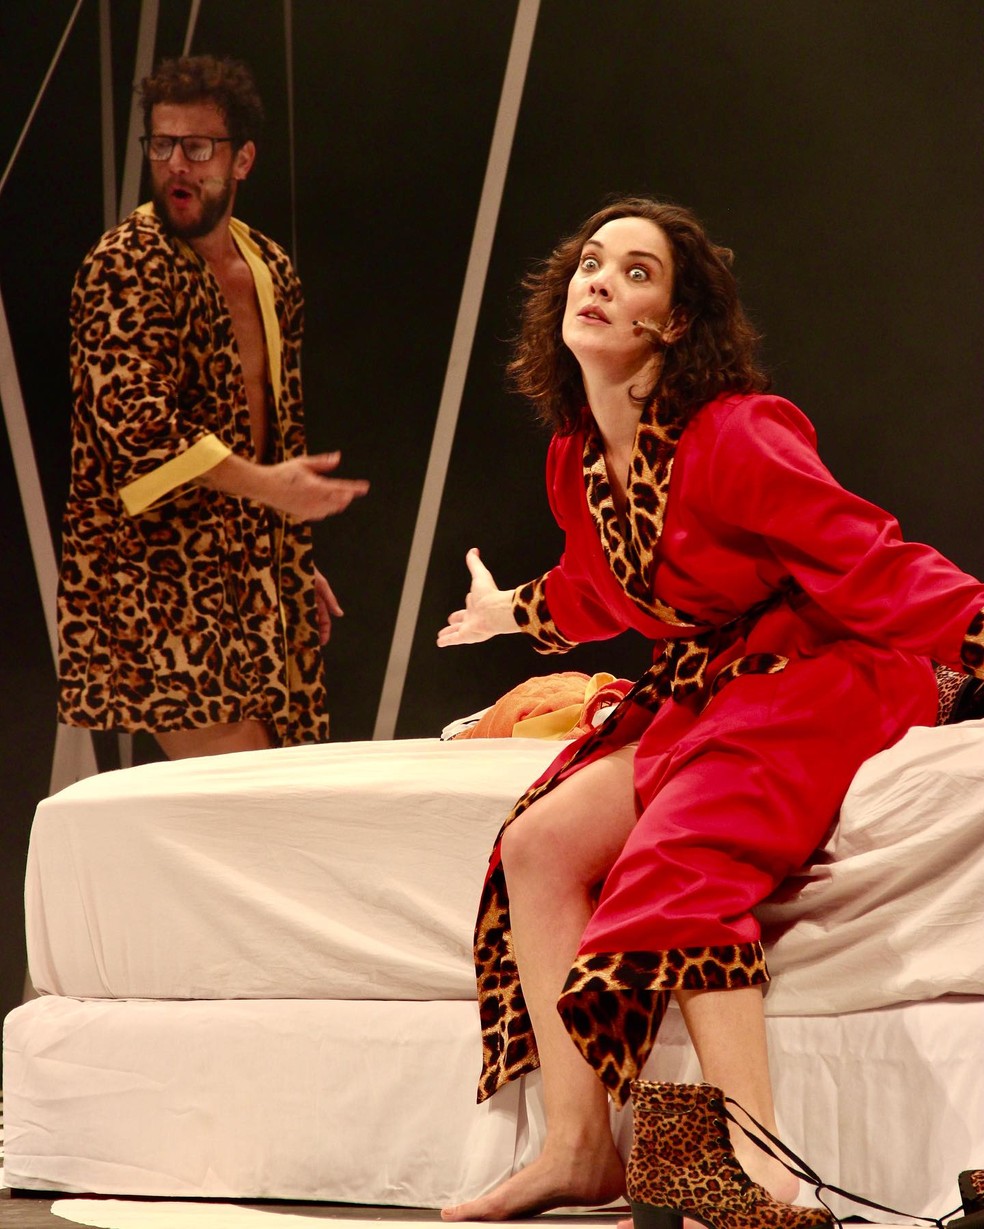 Eduardo Pelizzari e Adriana Birolli na peça "O Dia Seguinte" — Foto: Reprodução/Instagram @adrianabirolli